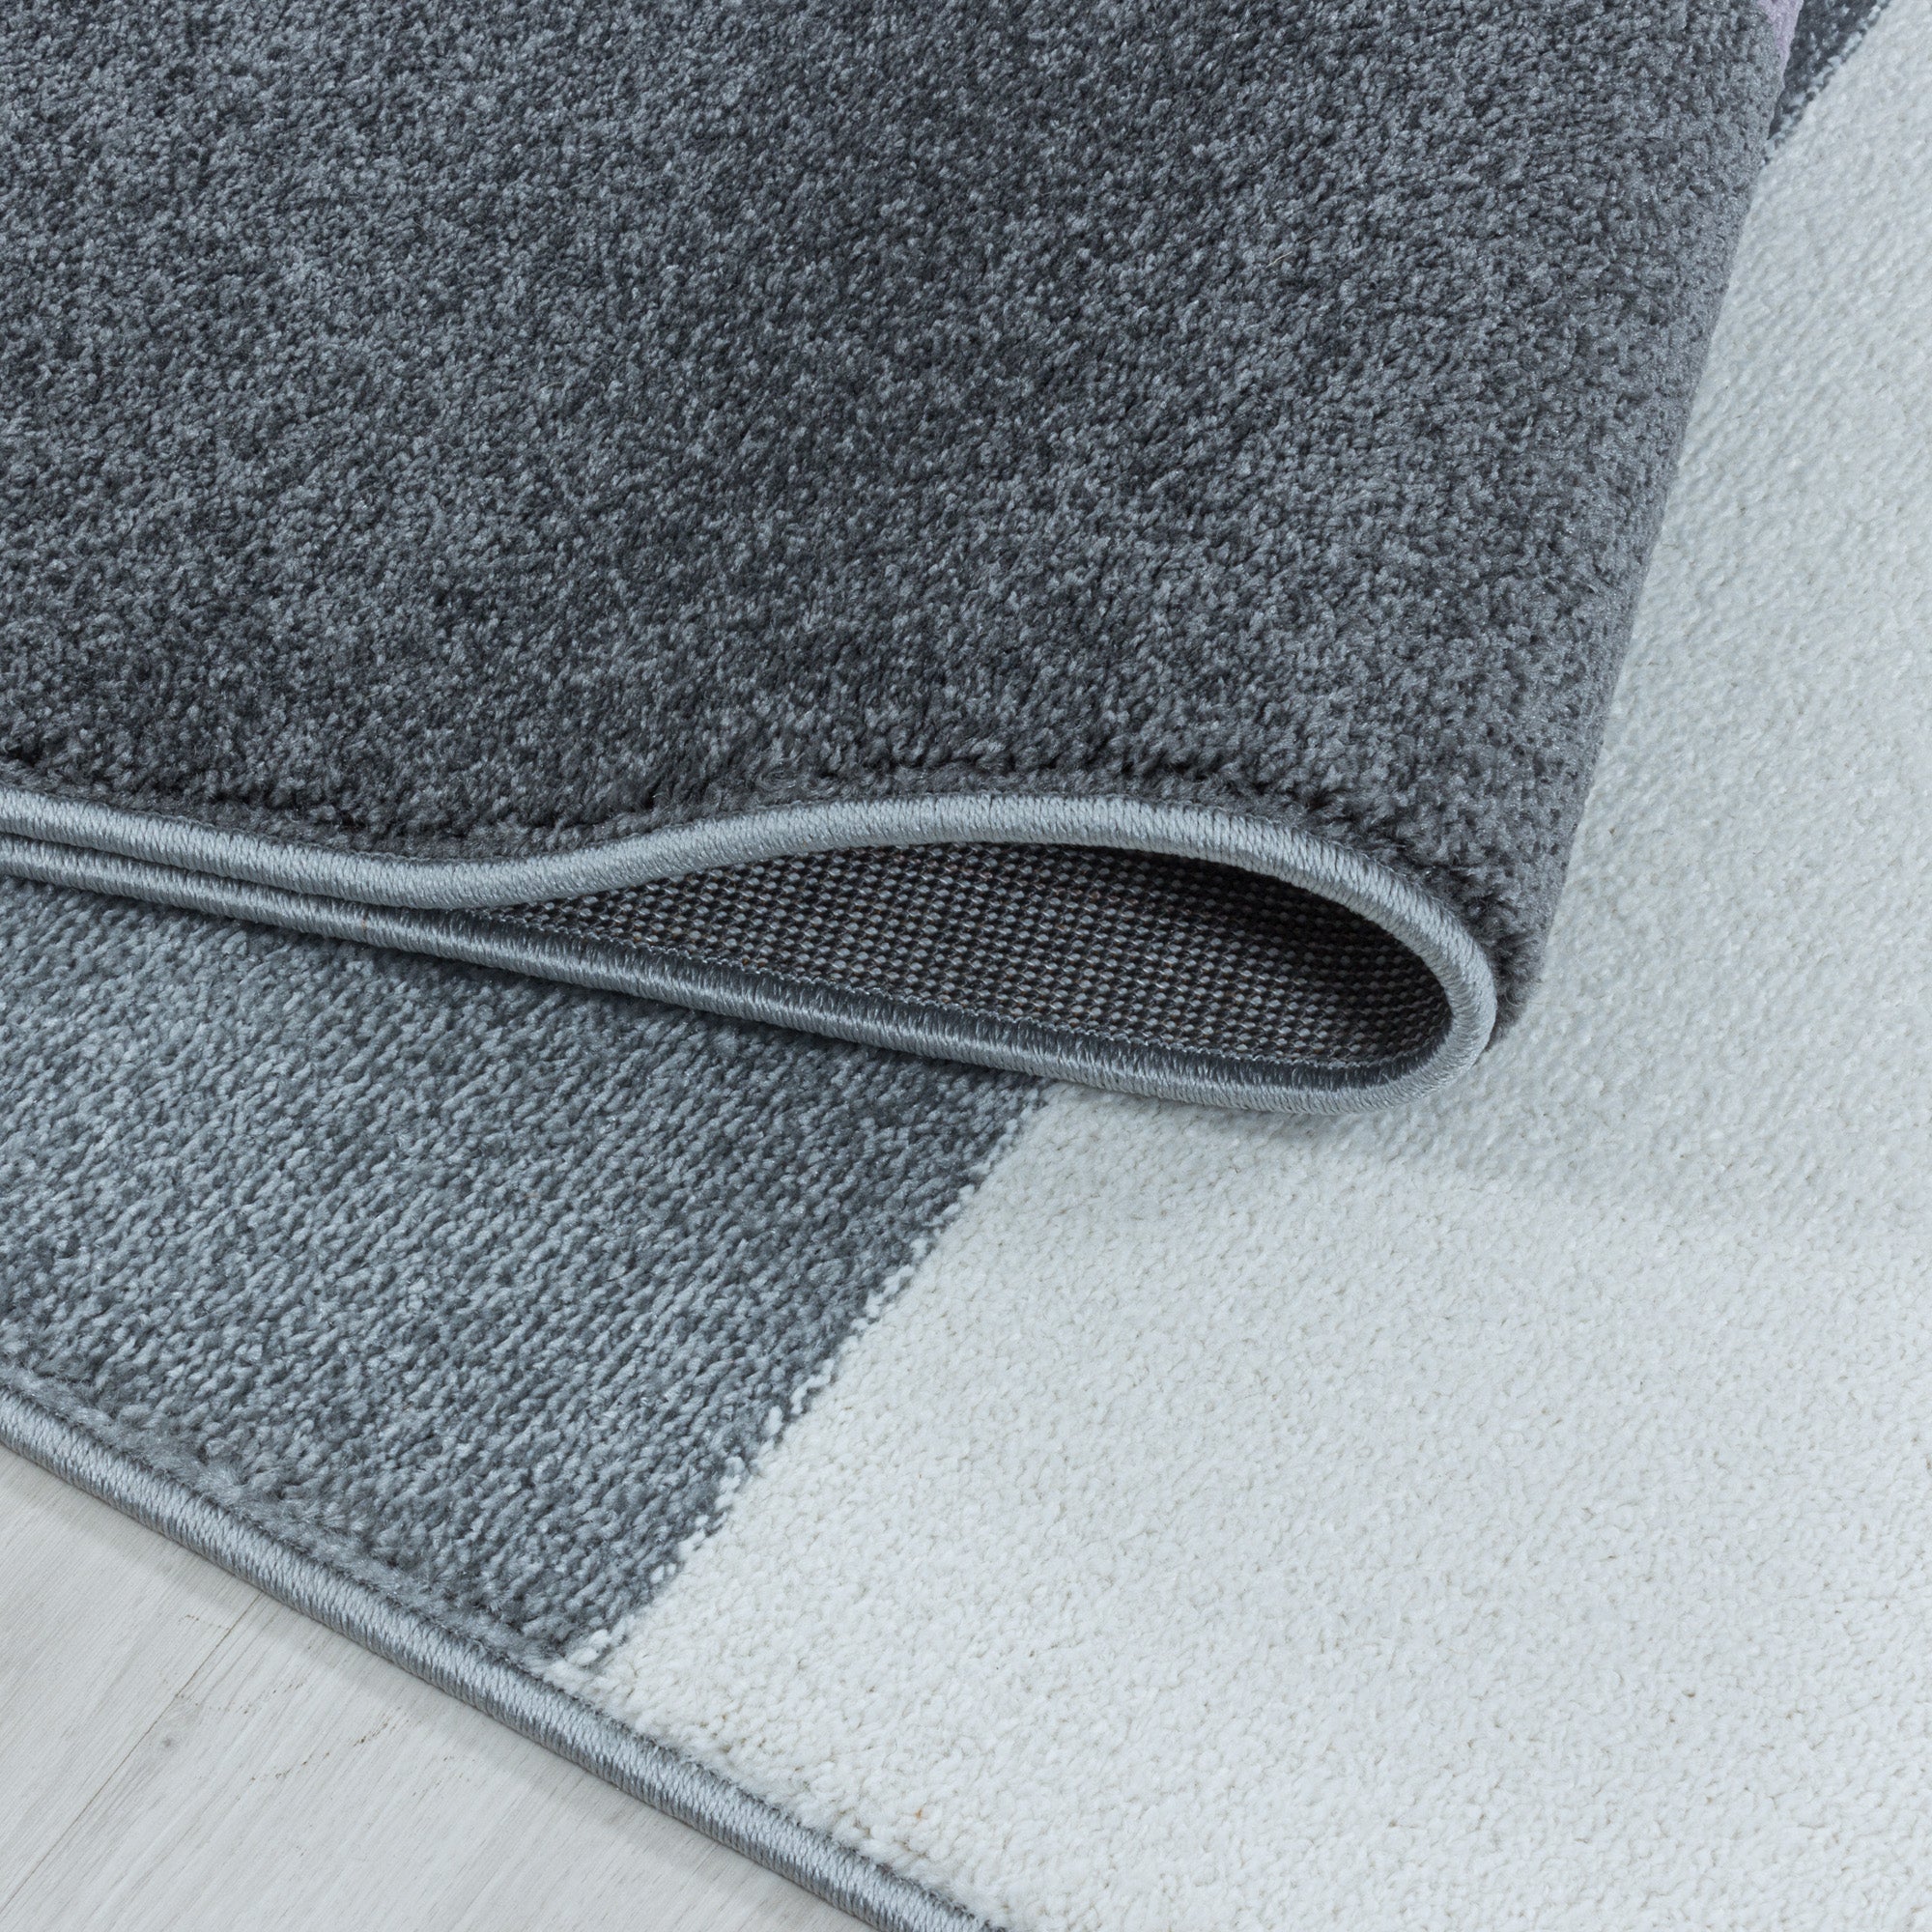 Kurzflor Design Teppich Wohnzimmerteppich Zipcode Muster Abstrakt Violet